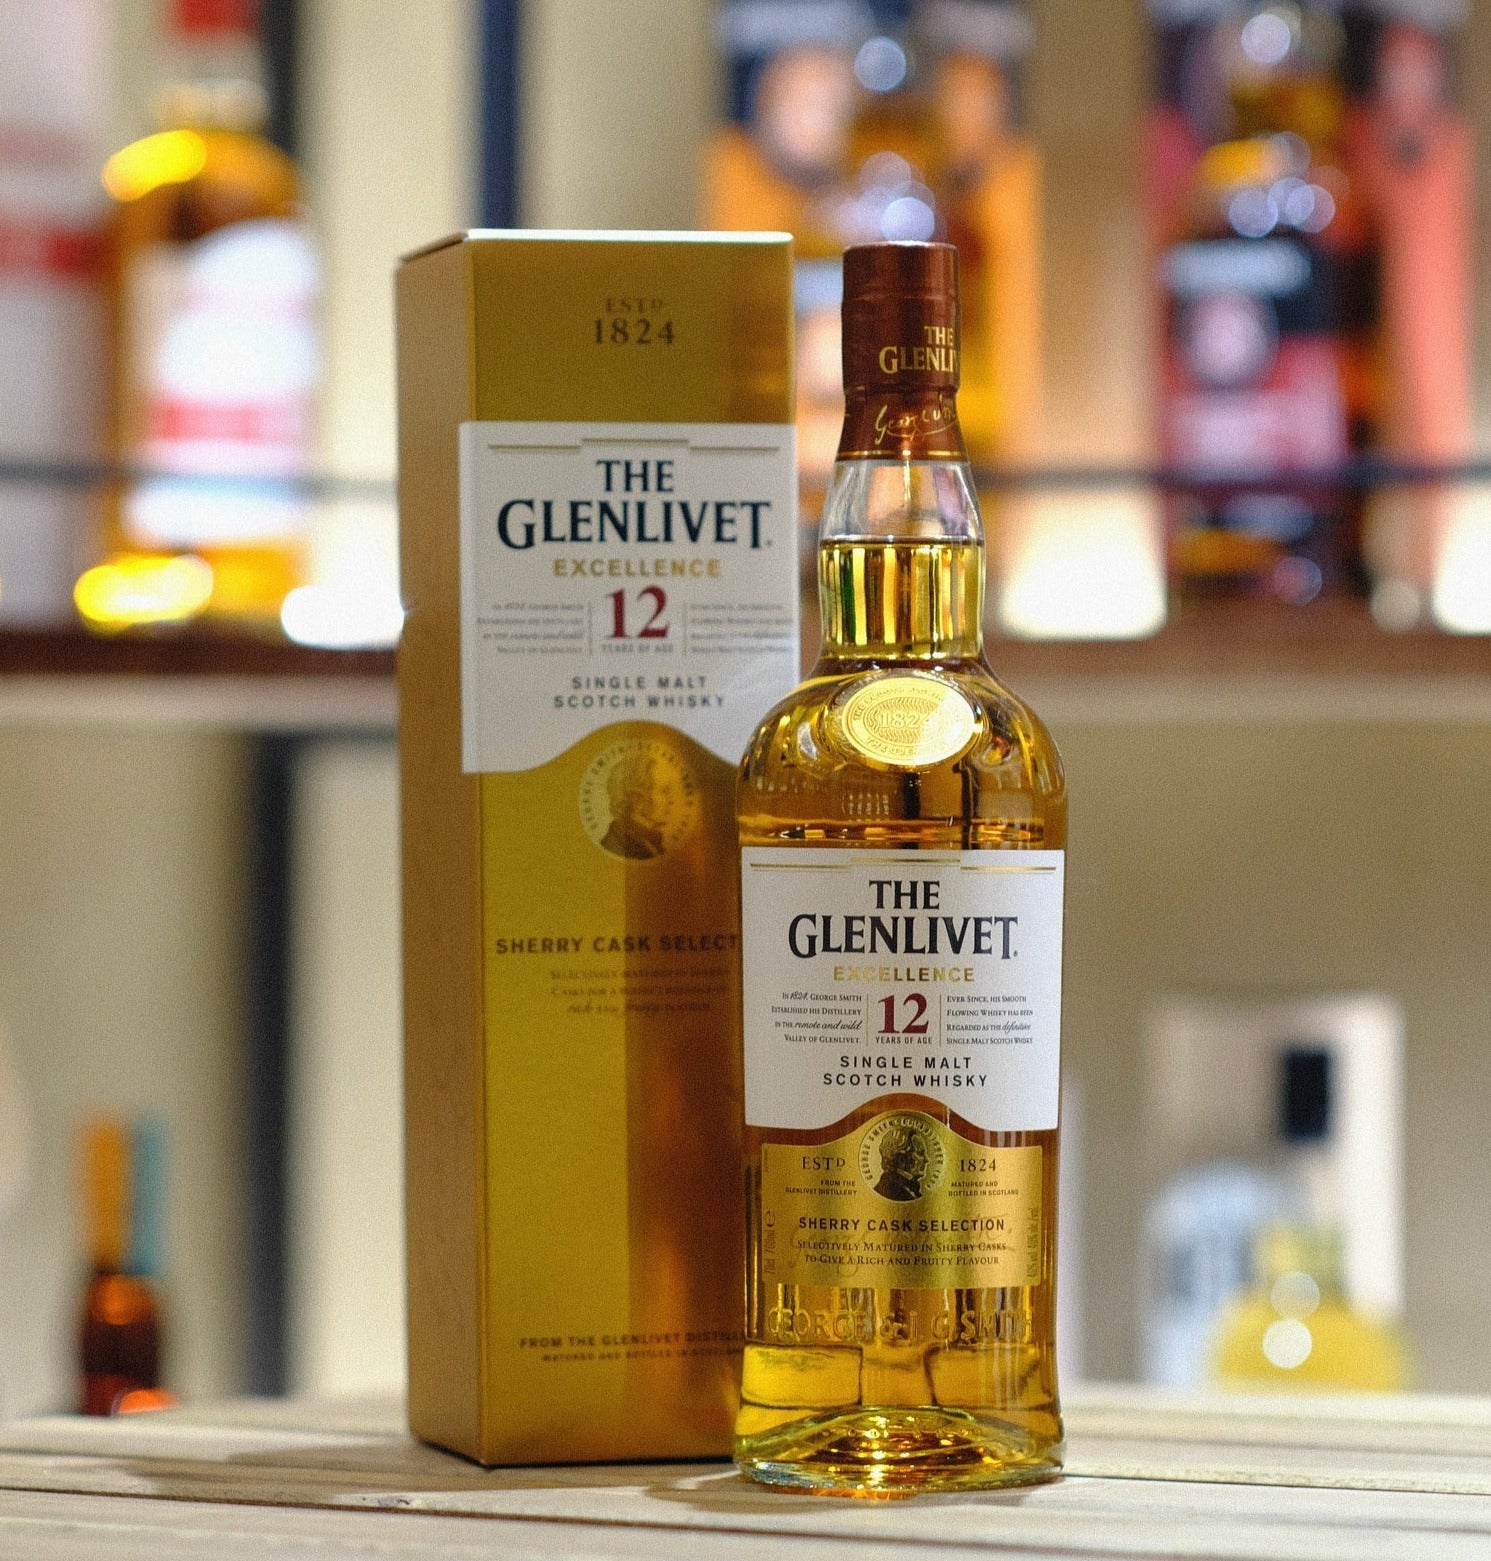 Glenlivet 12 Year Old Excellence Single Malt Scotch Whisky